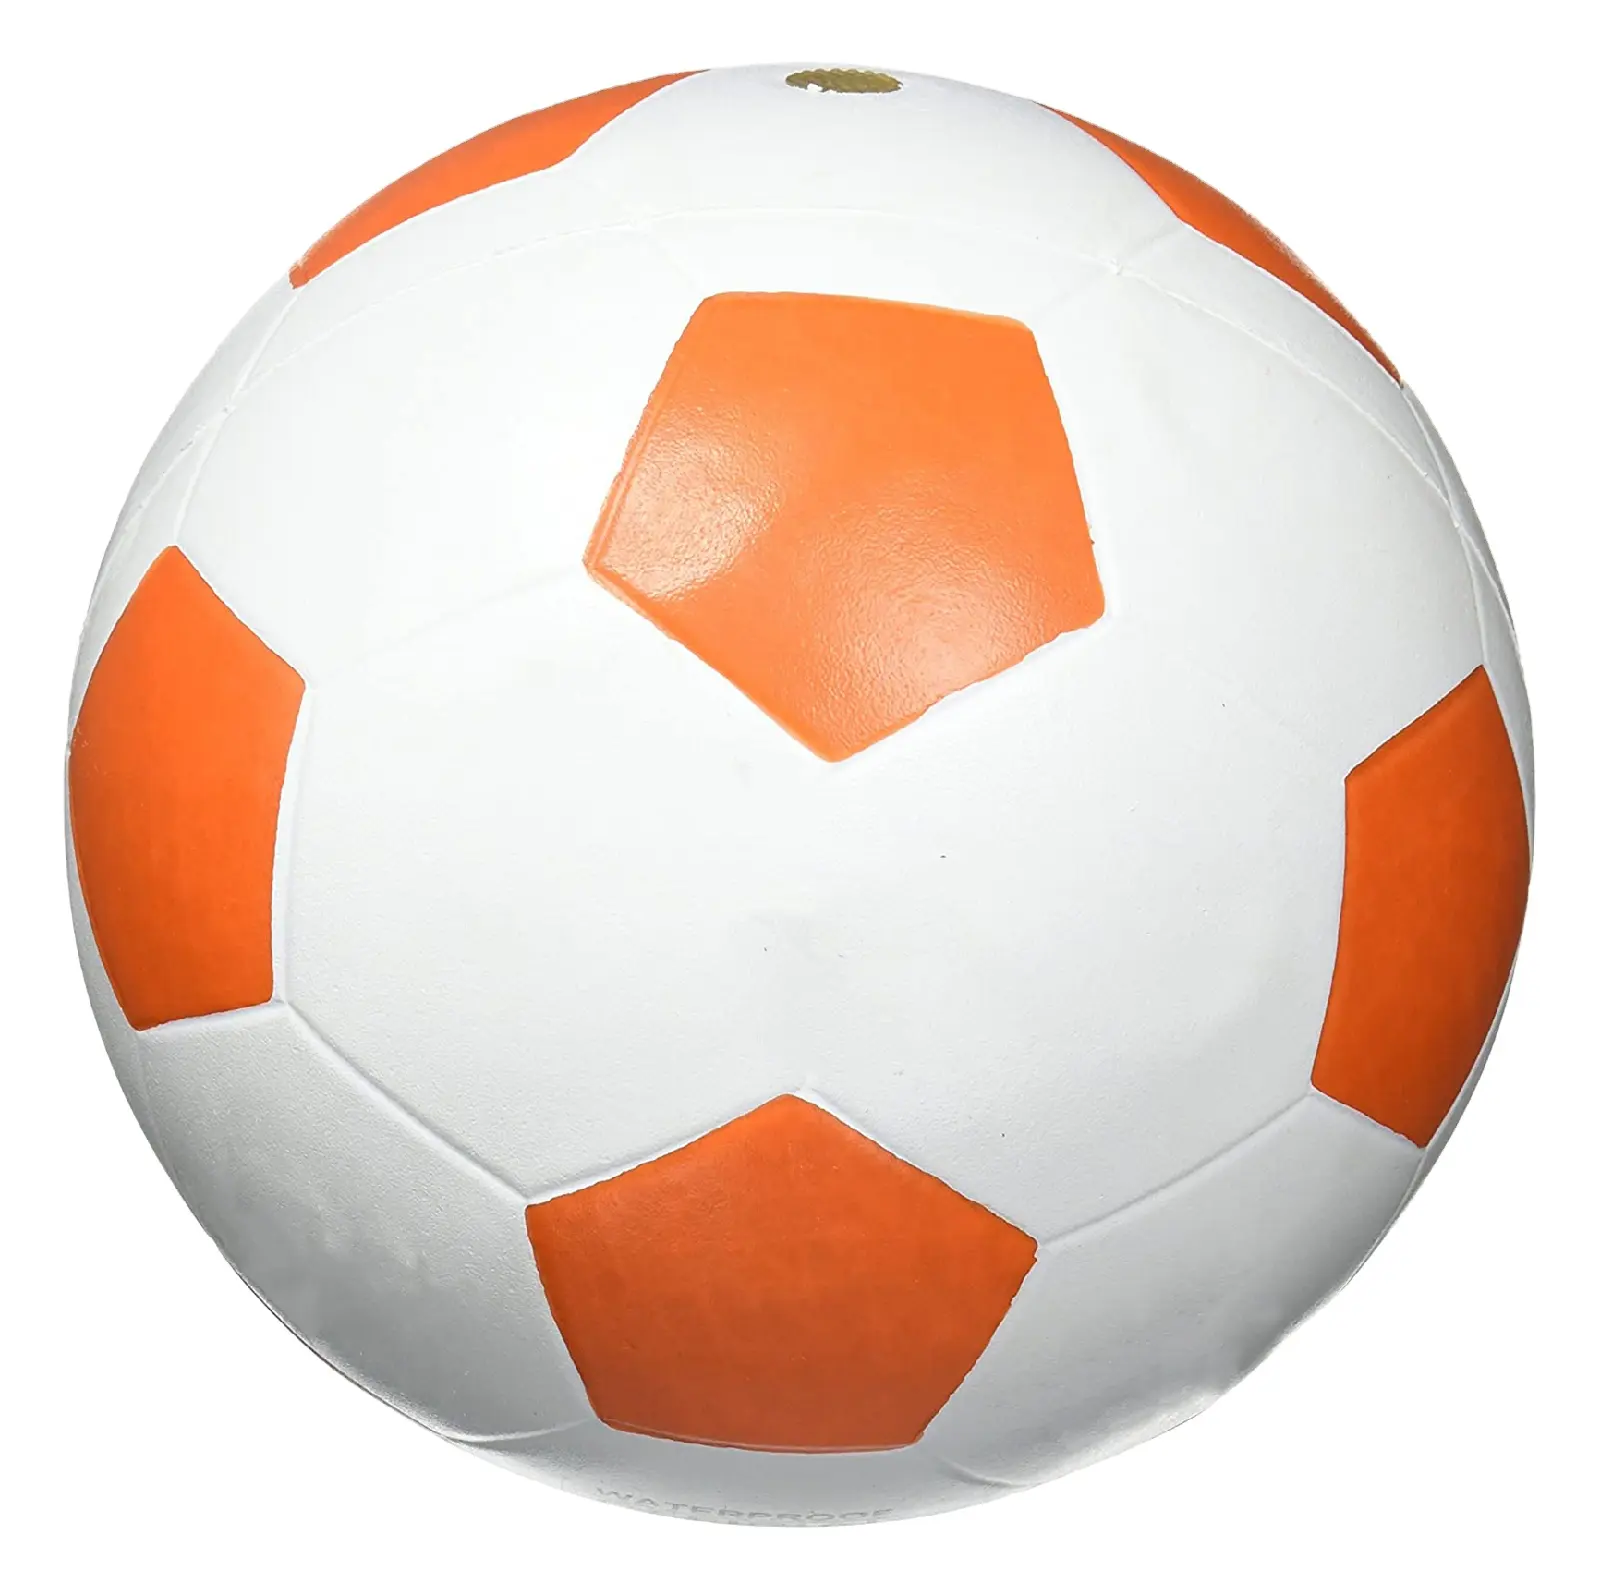 公式サッカーボールPUサッカーボールサイズ5チームマッチ滑り止めシームレスサッカートレーニング光沢のある表面スポーツ用品